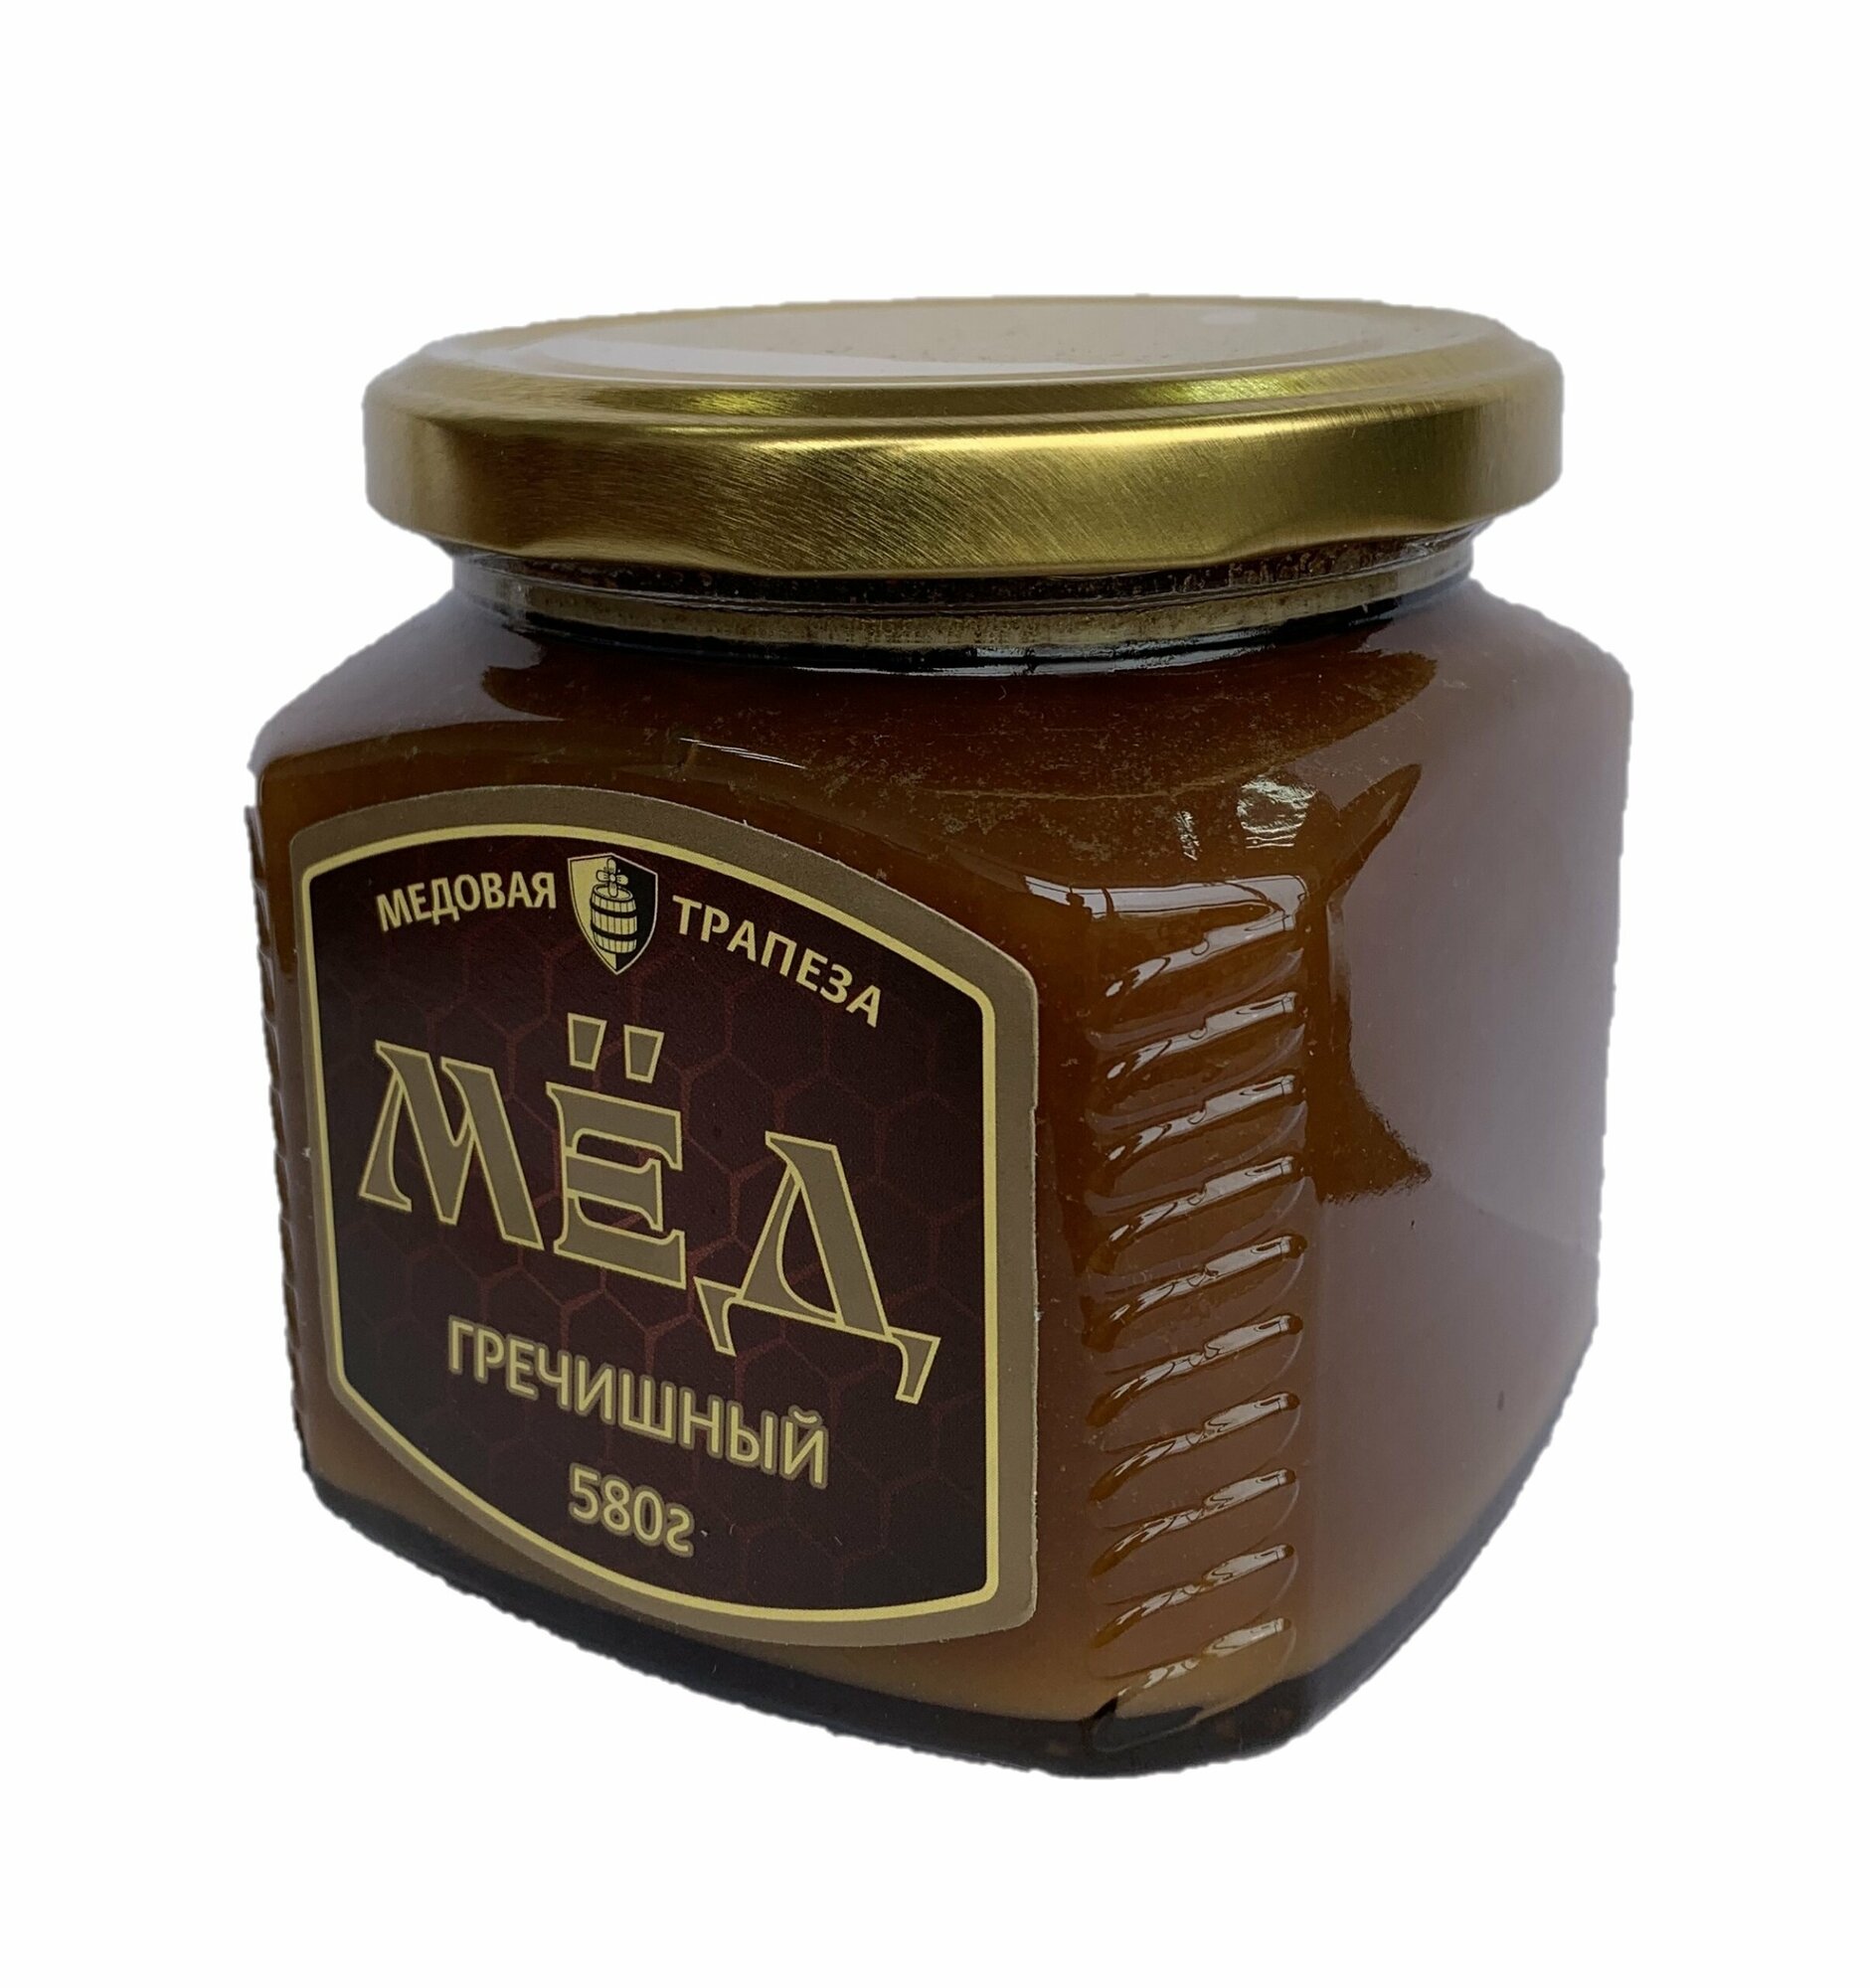 Мёд натуральный "медовая трапеза" Гречишный, 580 г - фотография № 1